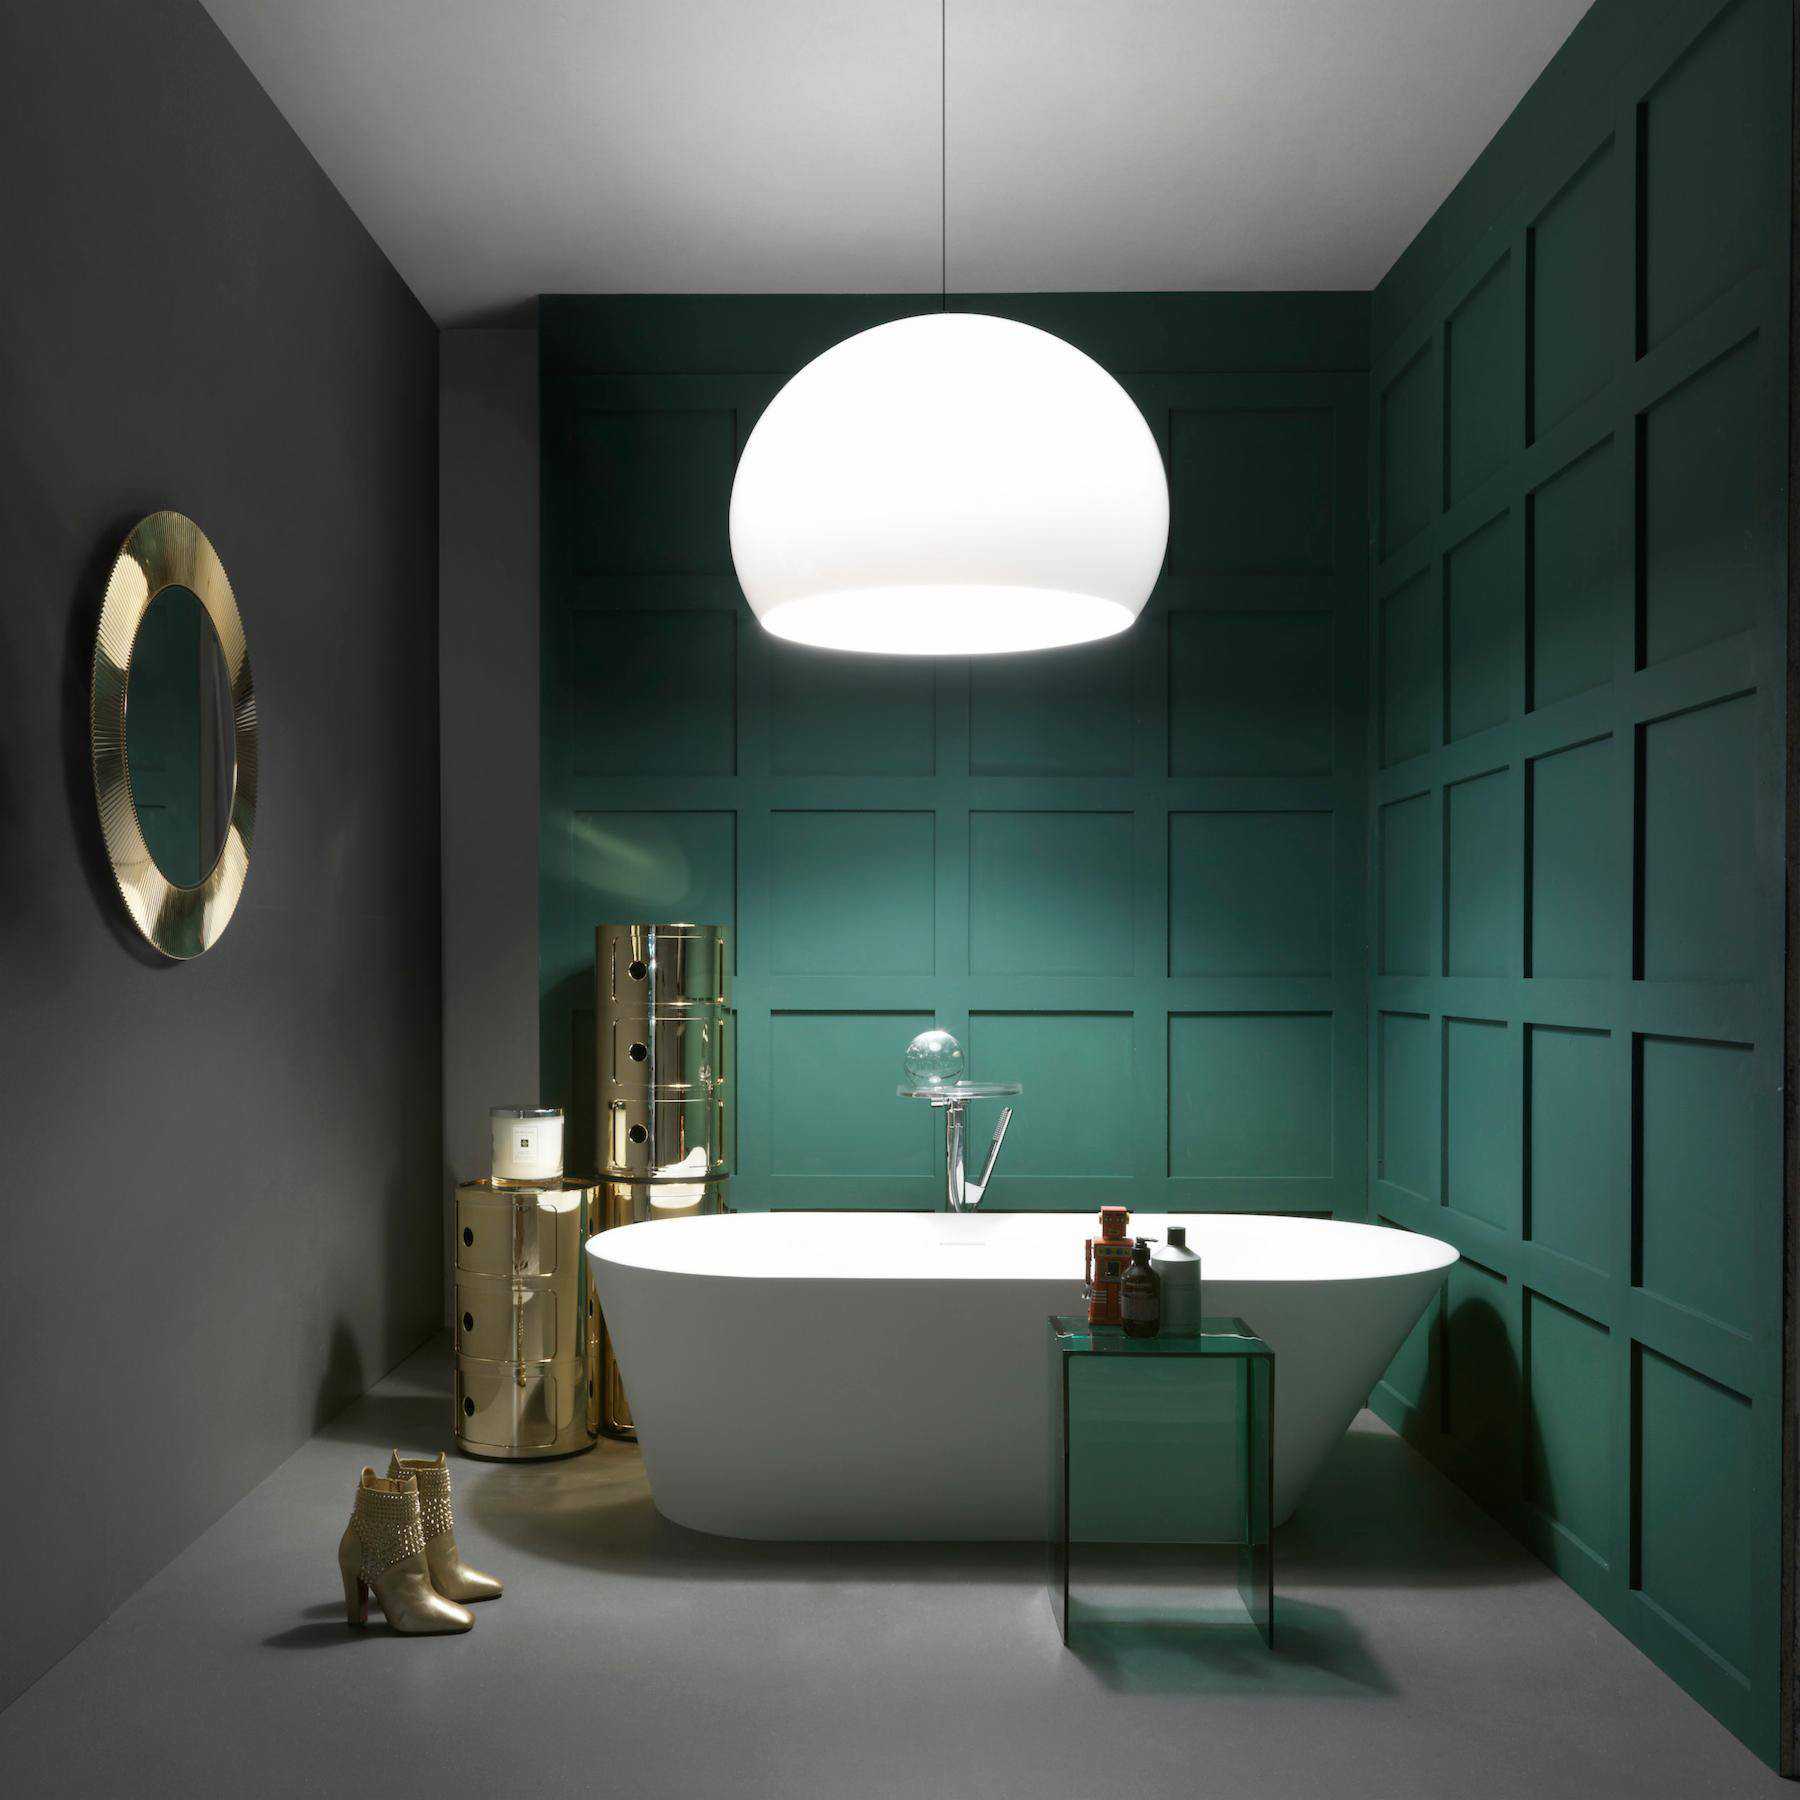 Светильники на потолок в ванную комнату (74 фото): потолочные модели в комнату с натяжным потолком